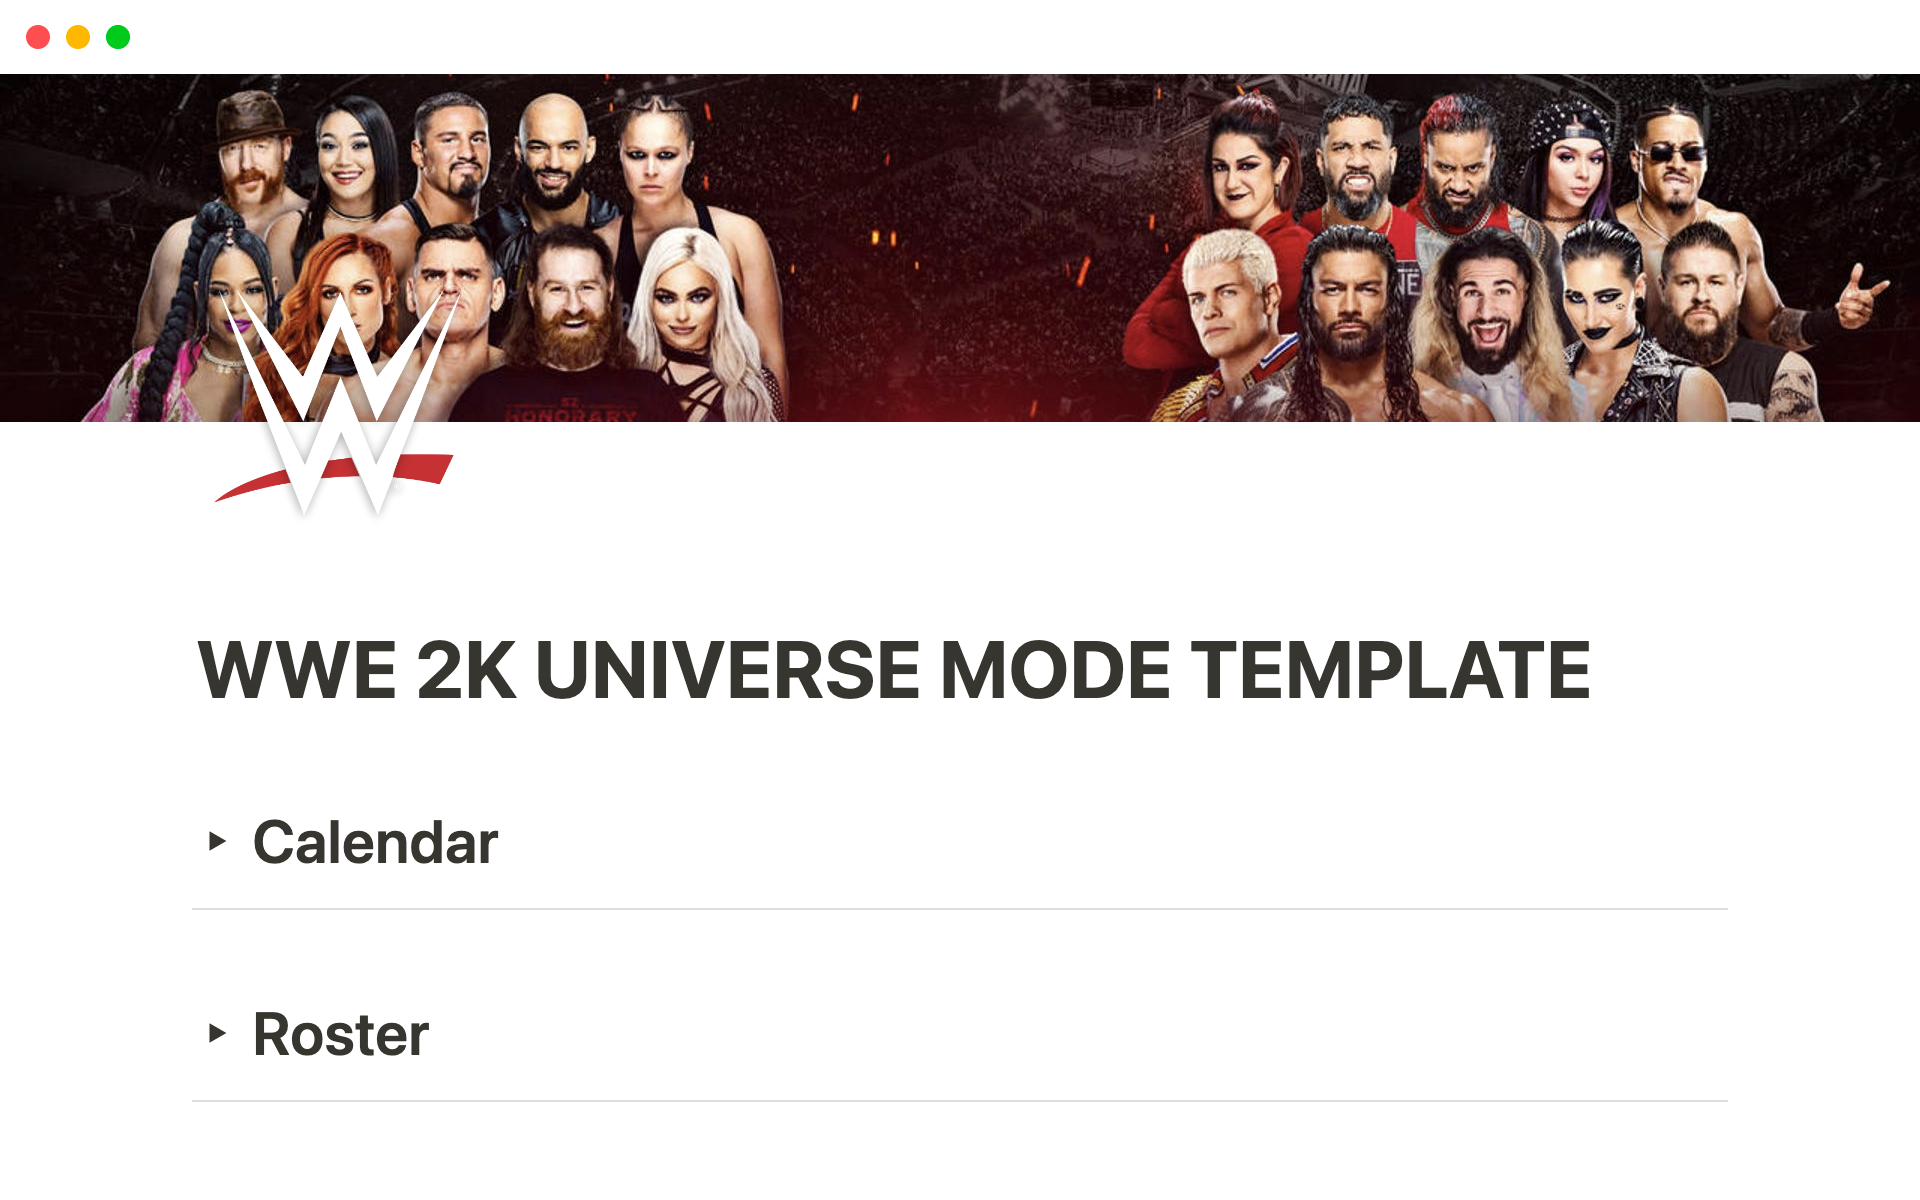 Vista previa de una plantilla para WWE 2K Universe Mode